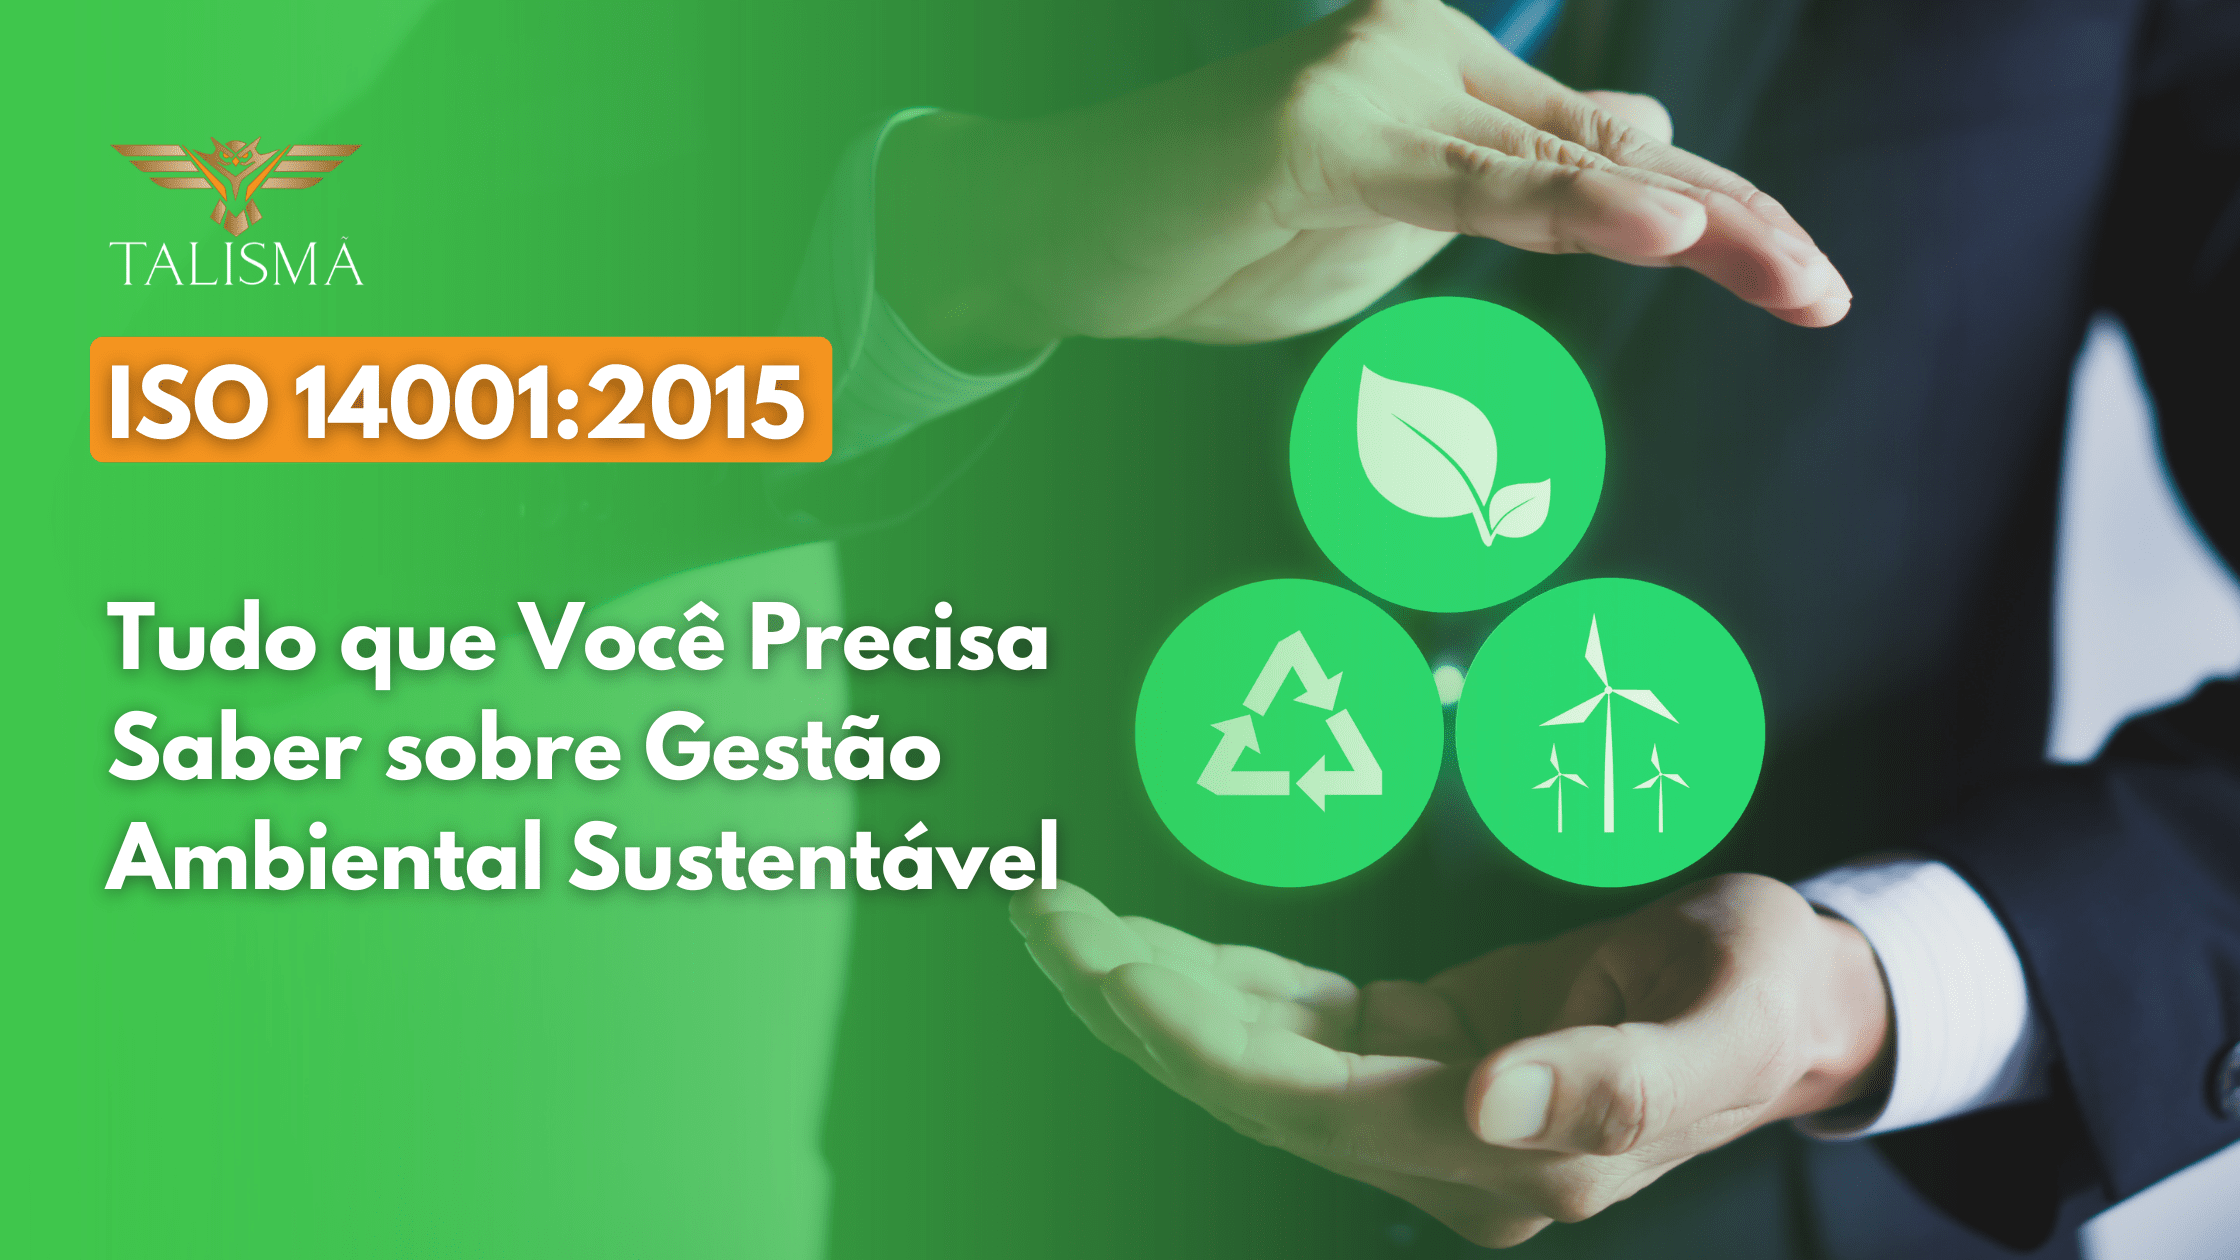 ISO 14001:2015 - Tudo que Você Precisa Saber sobre Gestão Ambiental Sustentável